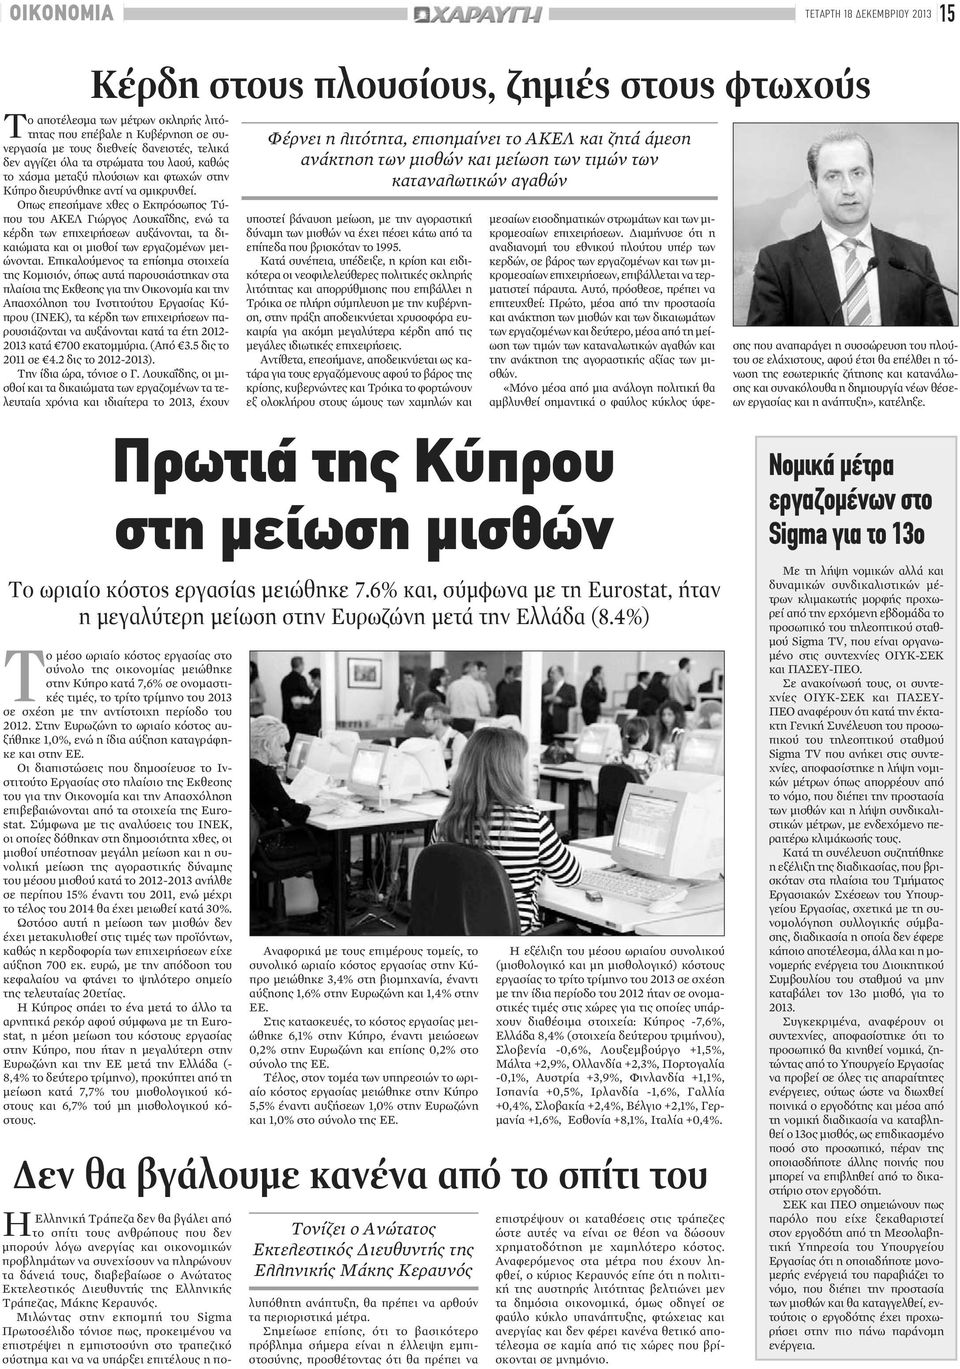 Οπως επεσήμανε χθες ο Εκπρόσωπος Τύπου του ΑΚΕΛ Γιώργος Λουκαΐδης, ενώ τα κέρδη των επιχειρήσεων αυξάνονται, τα δικαιώματα και οι μισθοί των εργαζομένων μειώνονται.